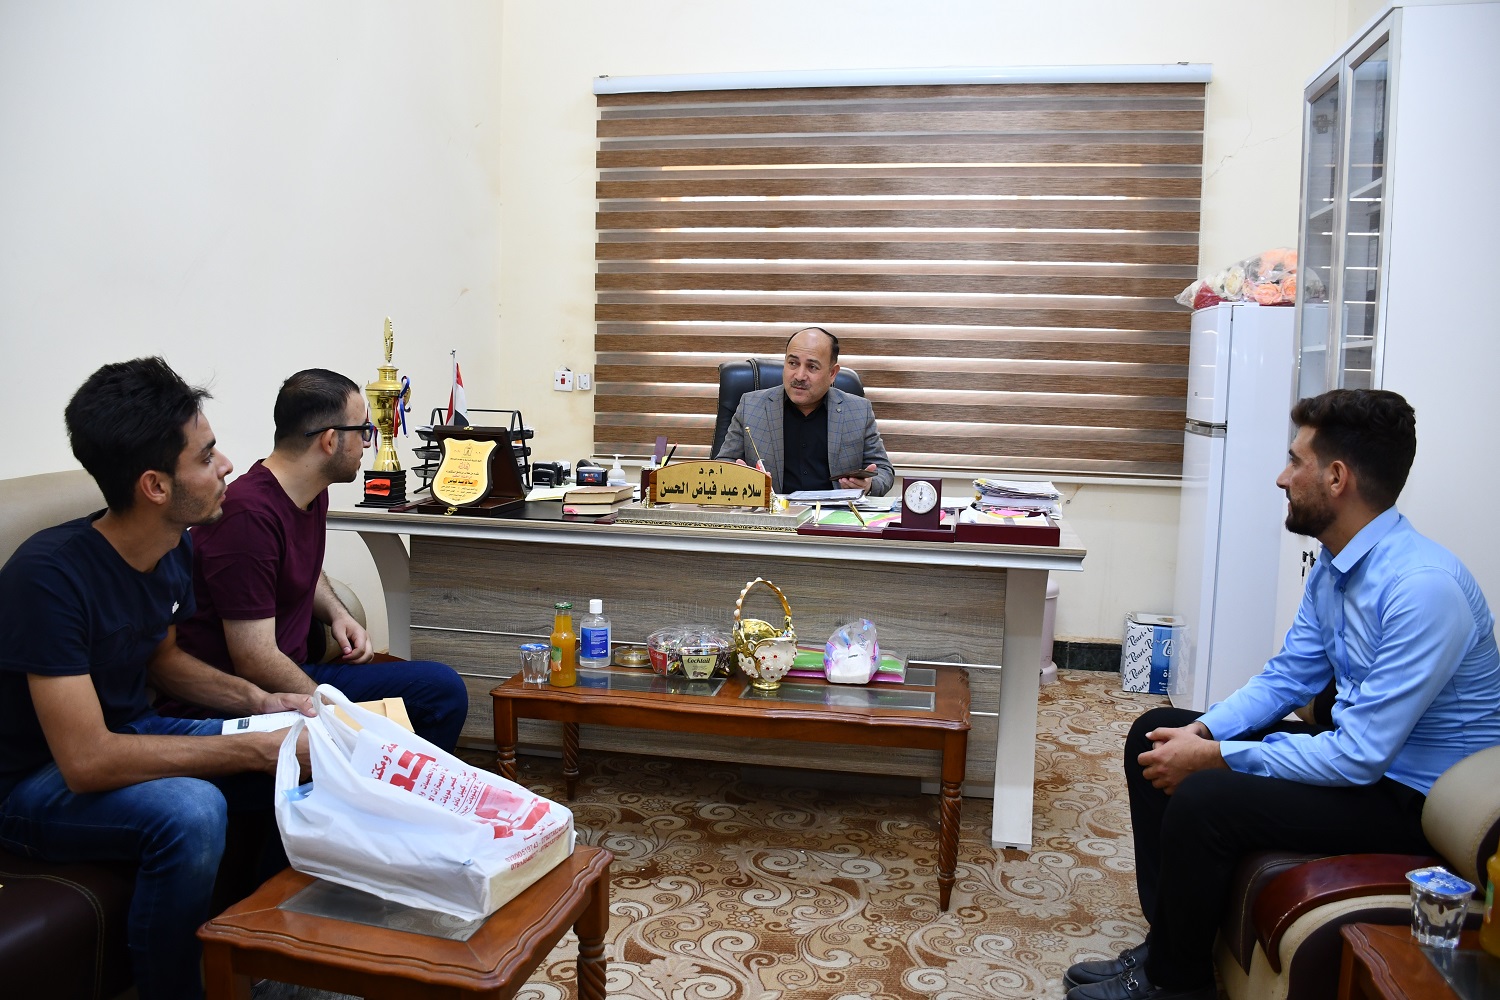 مجموعة من خريجي جامعة الانبار يهدون درع التميز لمدير قسم شؤون الأقسام الداخلية